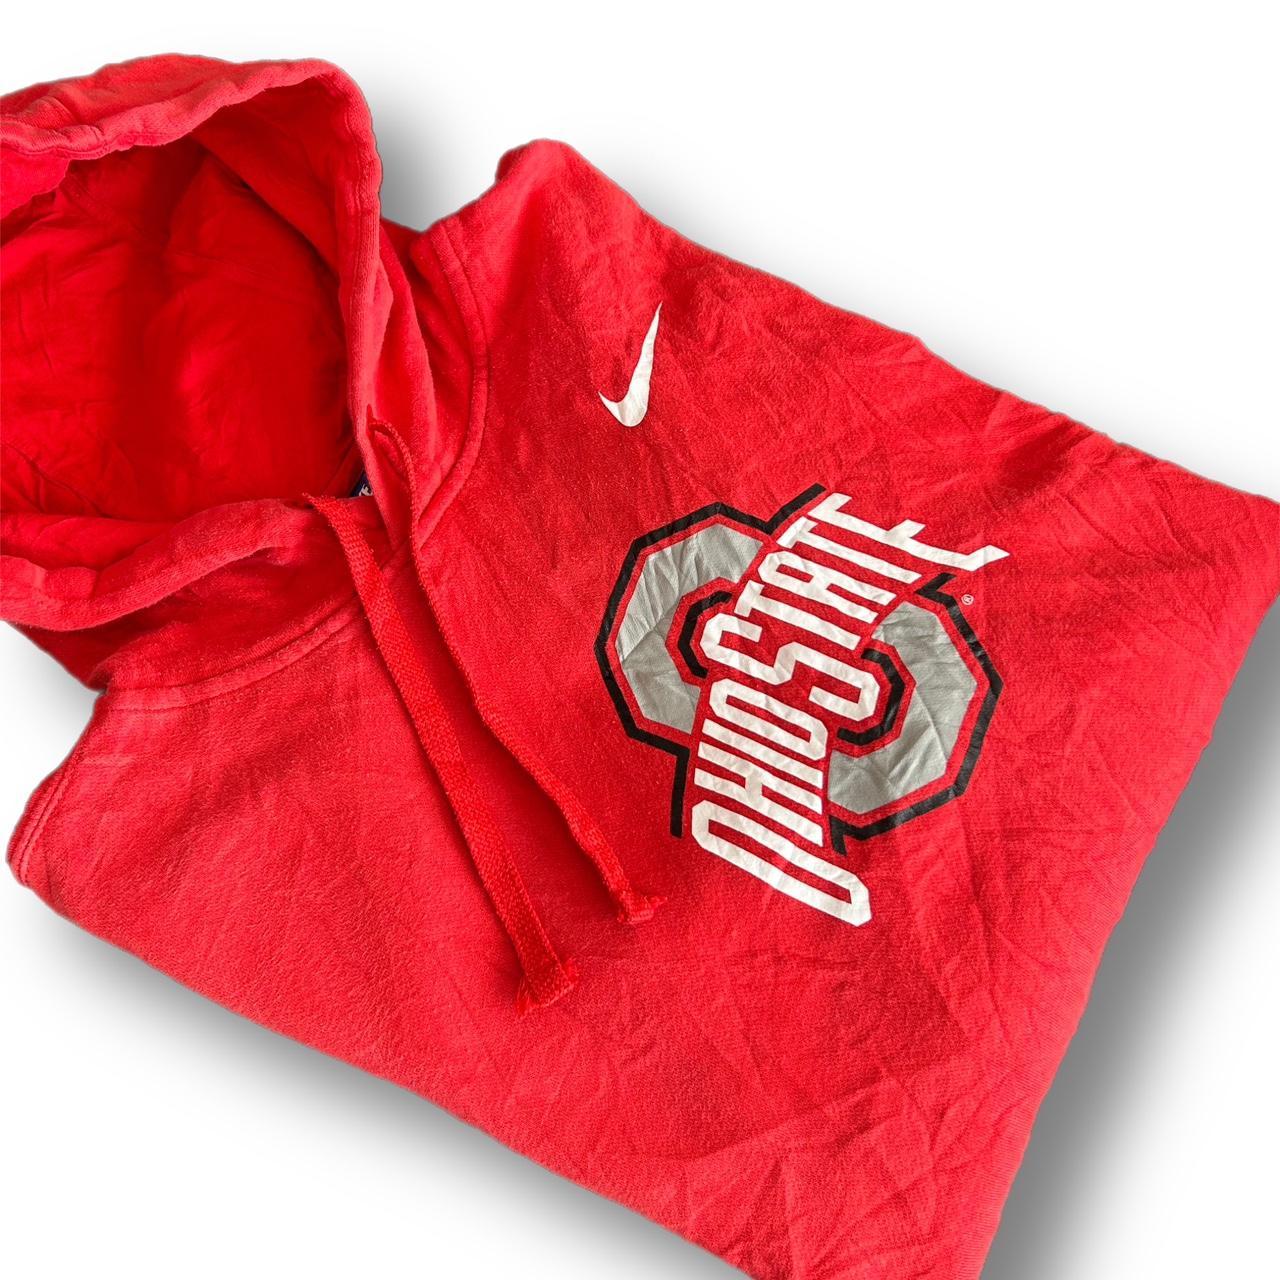 Nike cardinals hoodie Never worn 10/10 - Depop